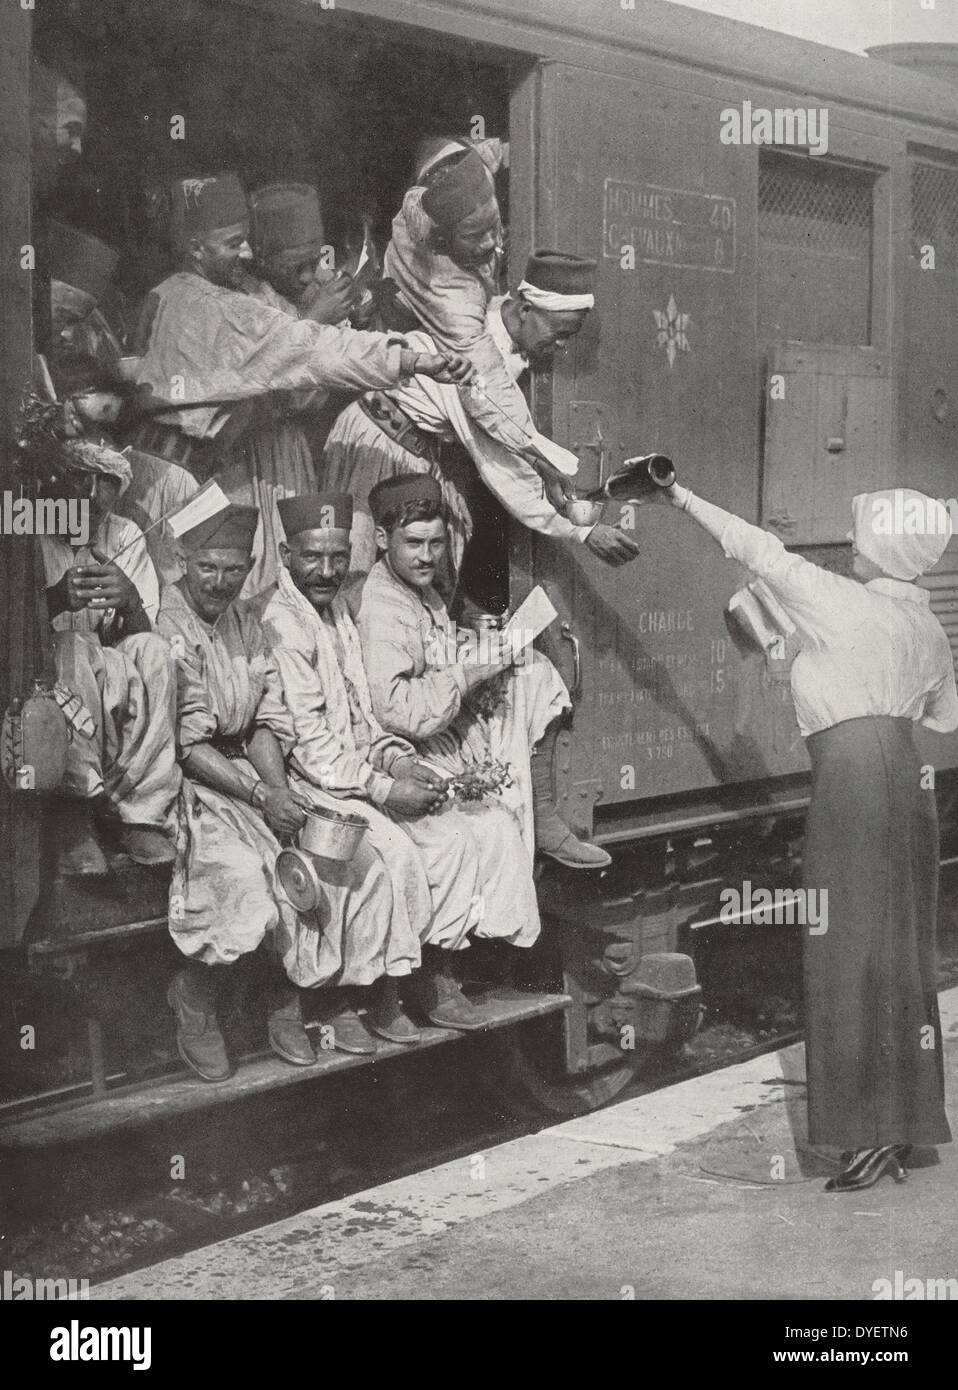 Eine Truppe Zug hielt an einem Bahnhof in Algerien, Französisch kolonialen Kräfte mobilisiert Frankreich bei Ausbruch des Ersten Weltkriegs zu unterstützen, zu sammeln, zu 19140101 Stockfoto